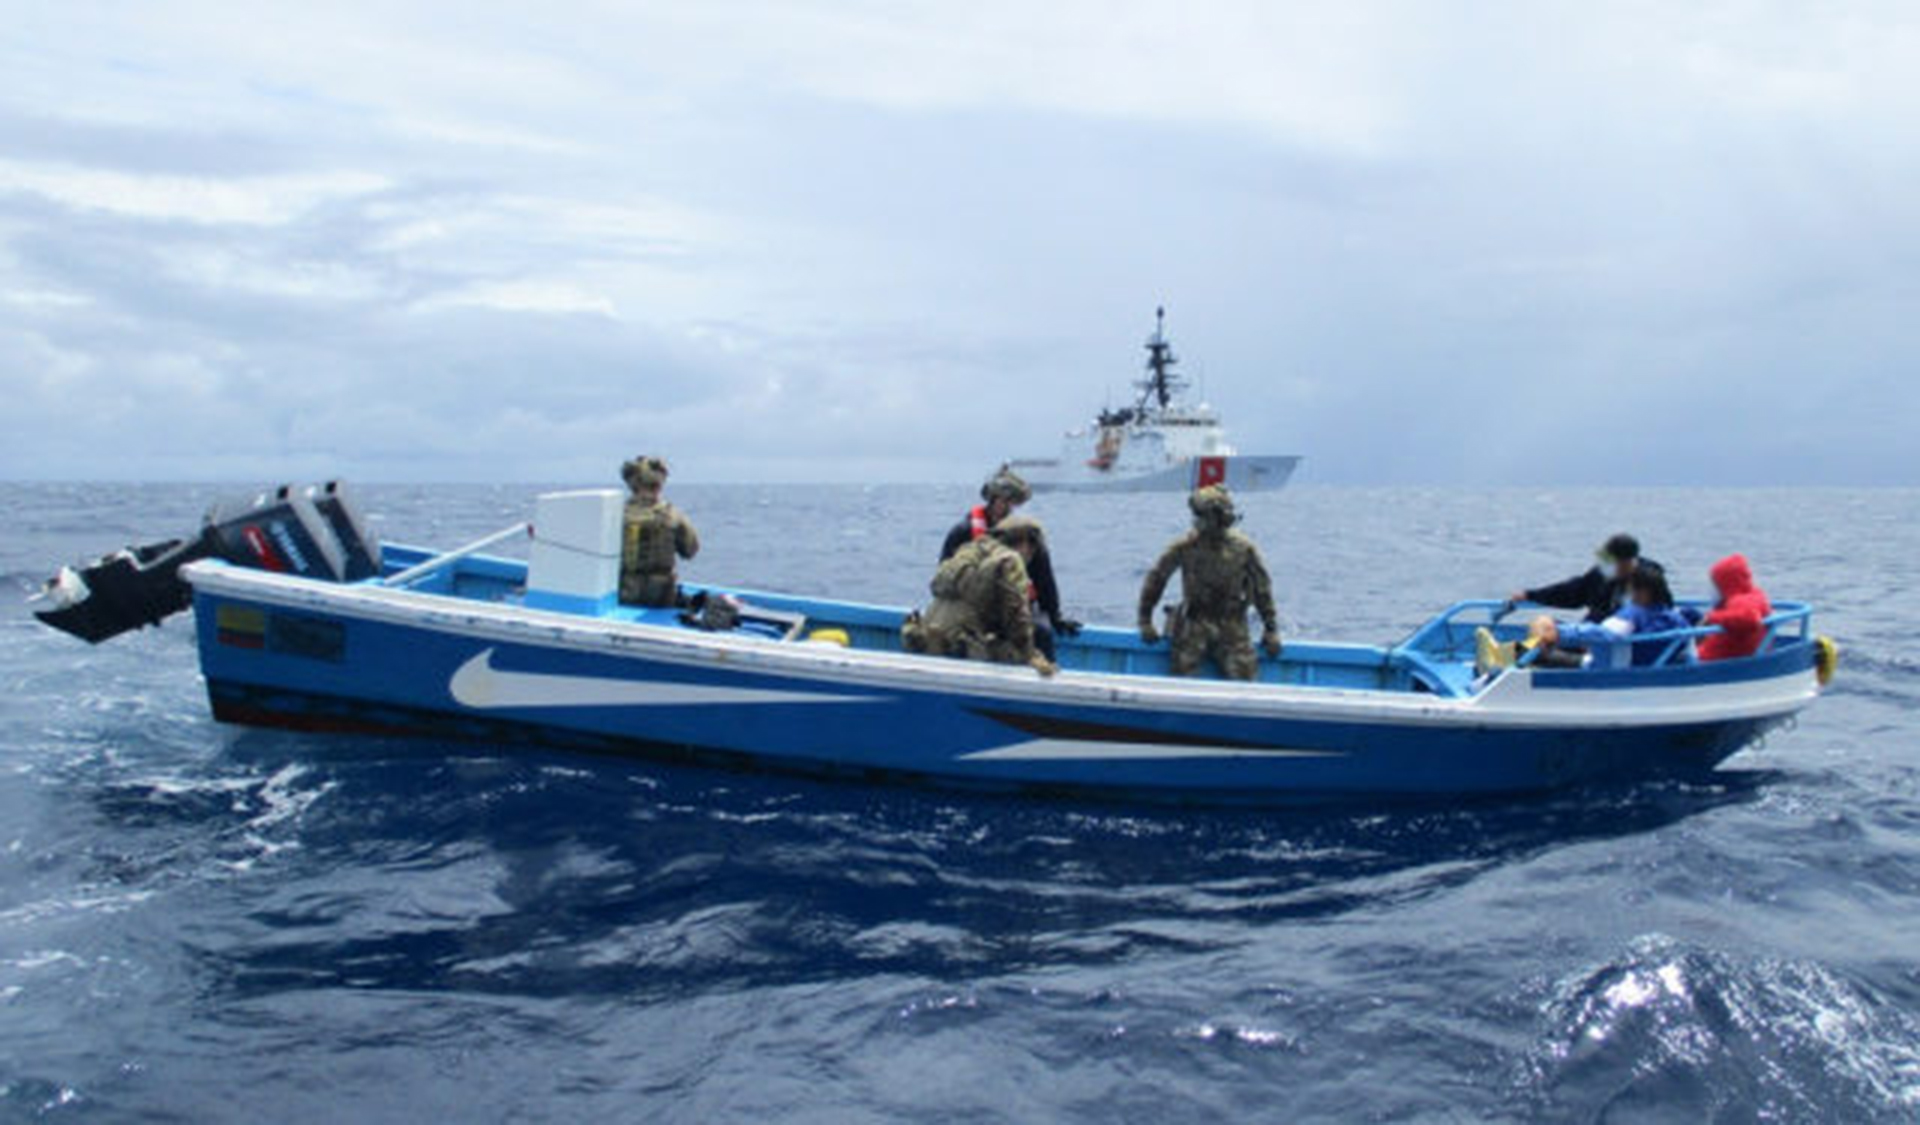 El barco fue remolcado a Curazao, donde el tripulante y el cargamento fue entregado a la policía local